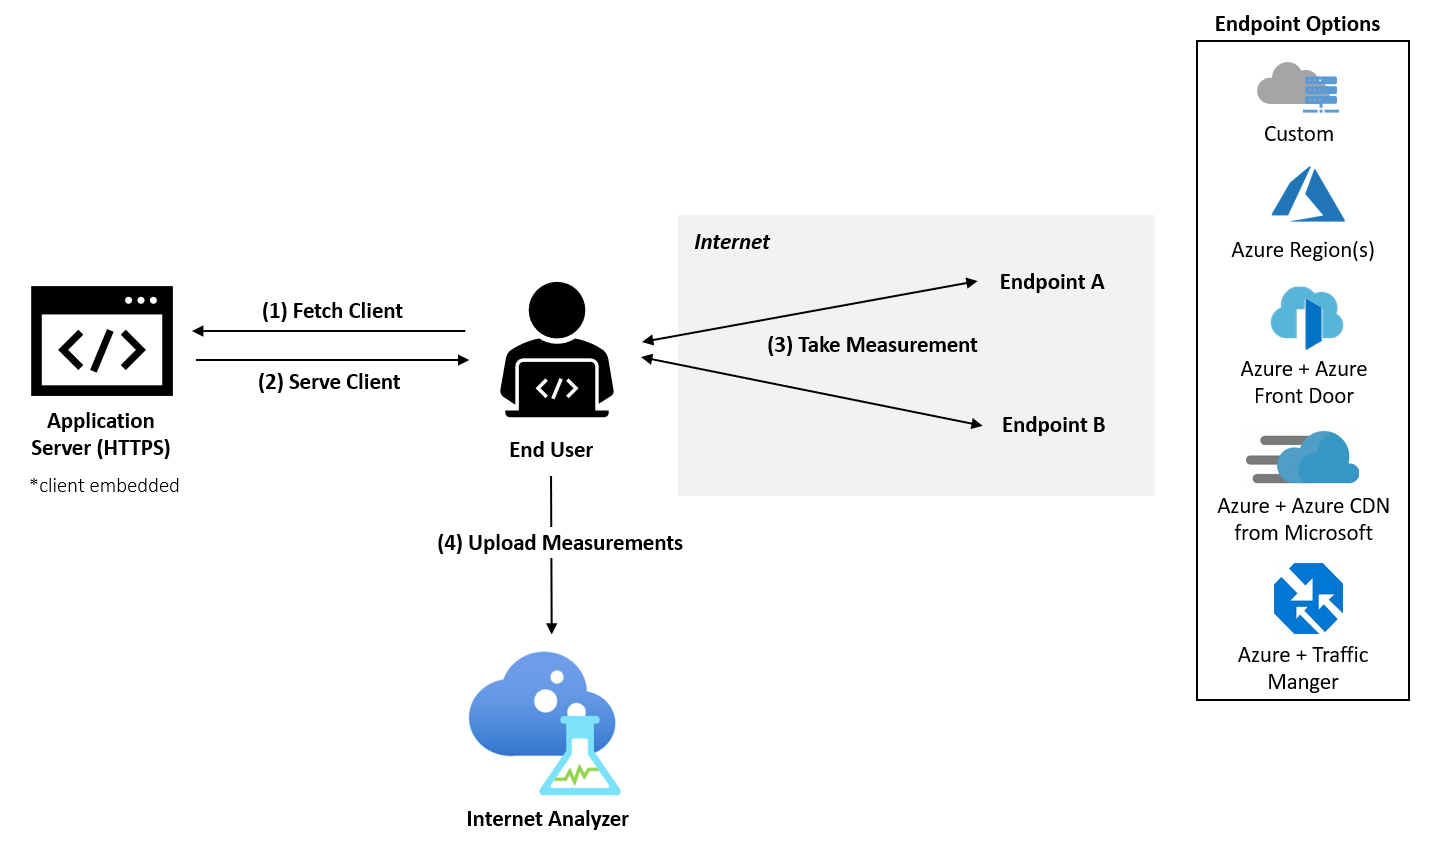 En el diagrama se muestra que un usuario final se conecta a un servidor de aplicaciones con un cliente insertado y a los dos puntos de conexión de Internet desde varias opciones. El usuario carga medidas en Internet Analyzer.